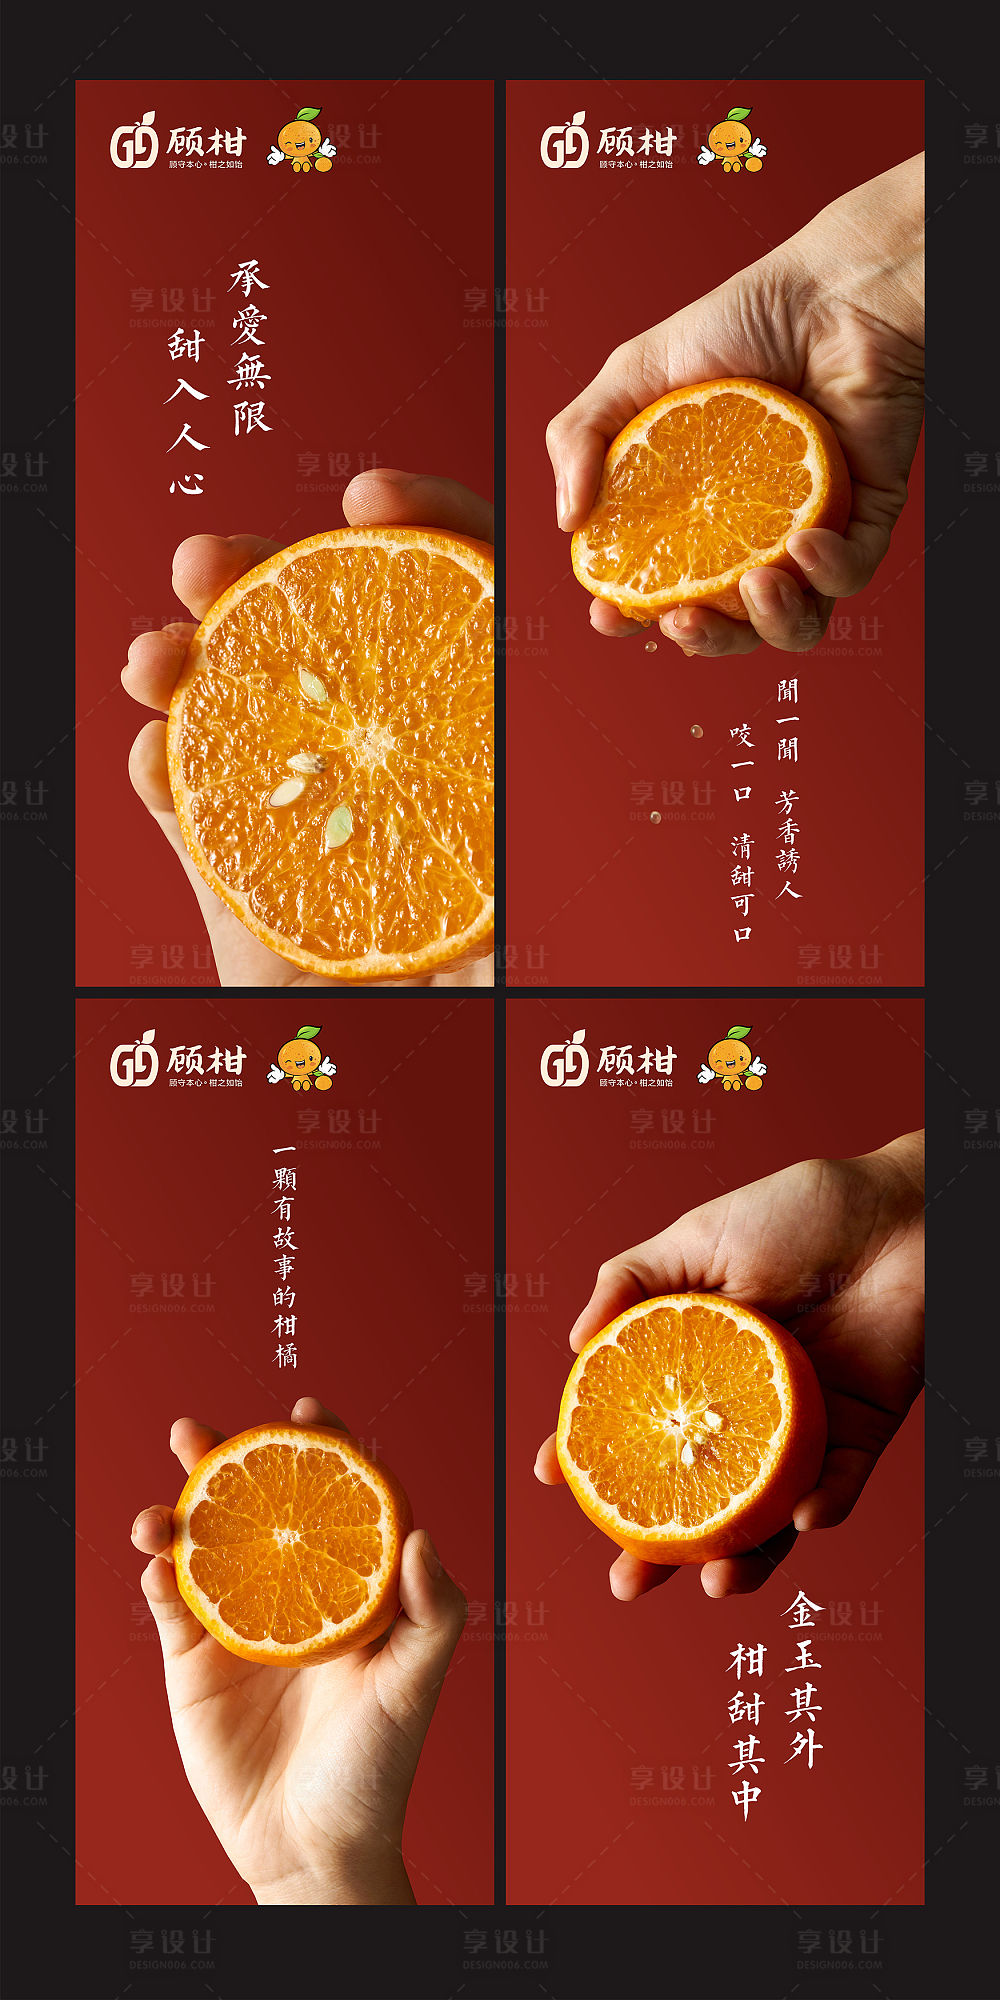 橘子搜索拼音_橘子搜索_橘子酸橘子甜阅读答案